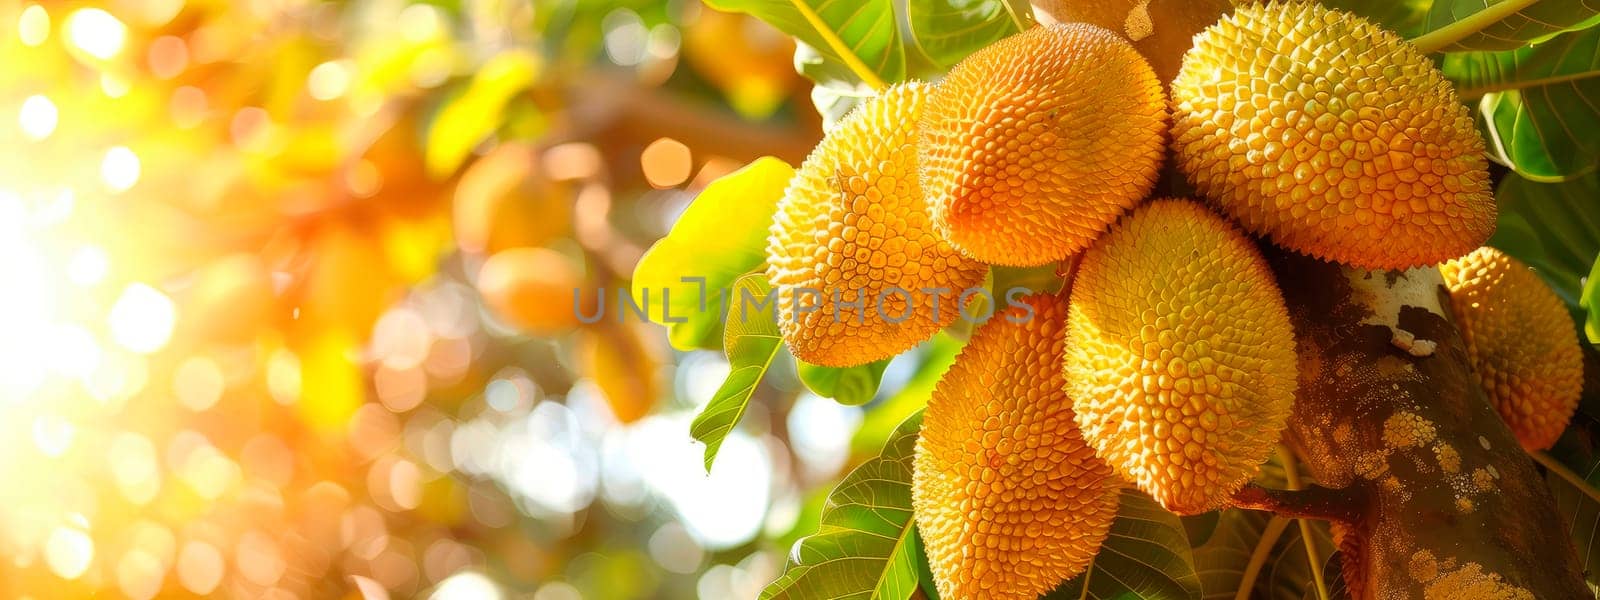 Jackfruit harvest in the garden. selective focus. food.